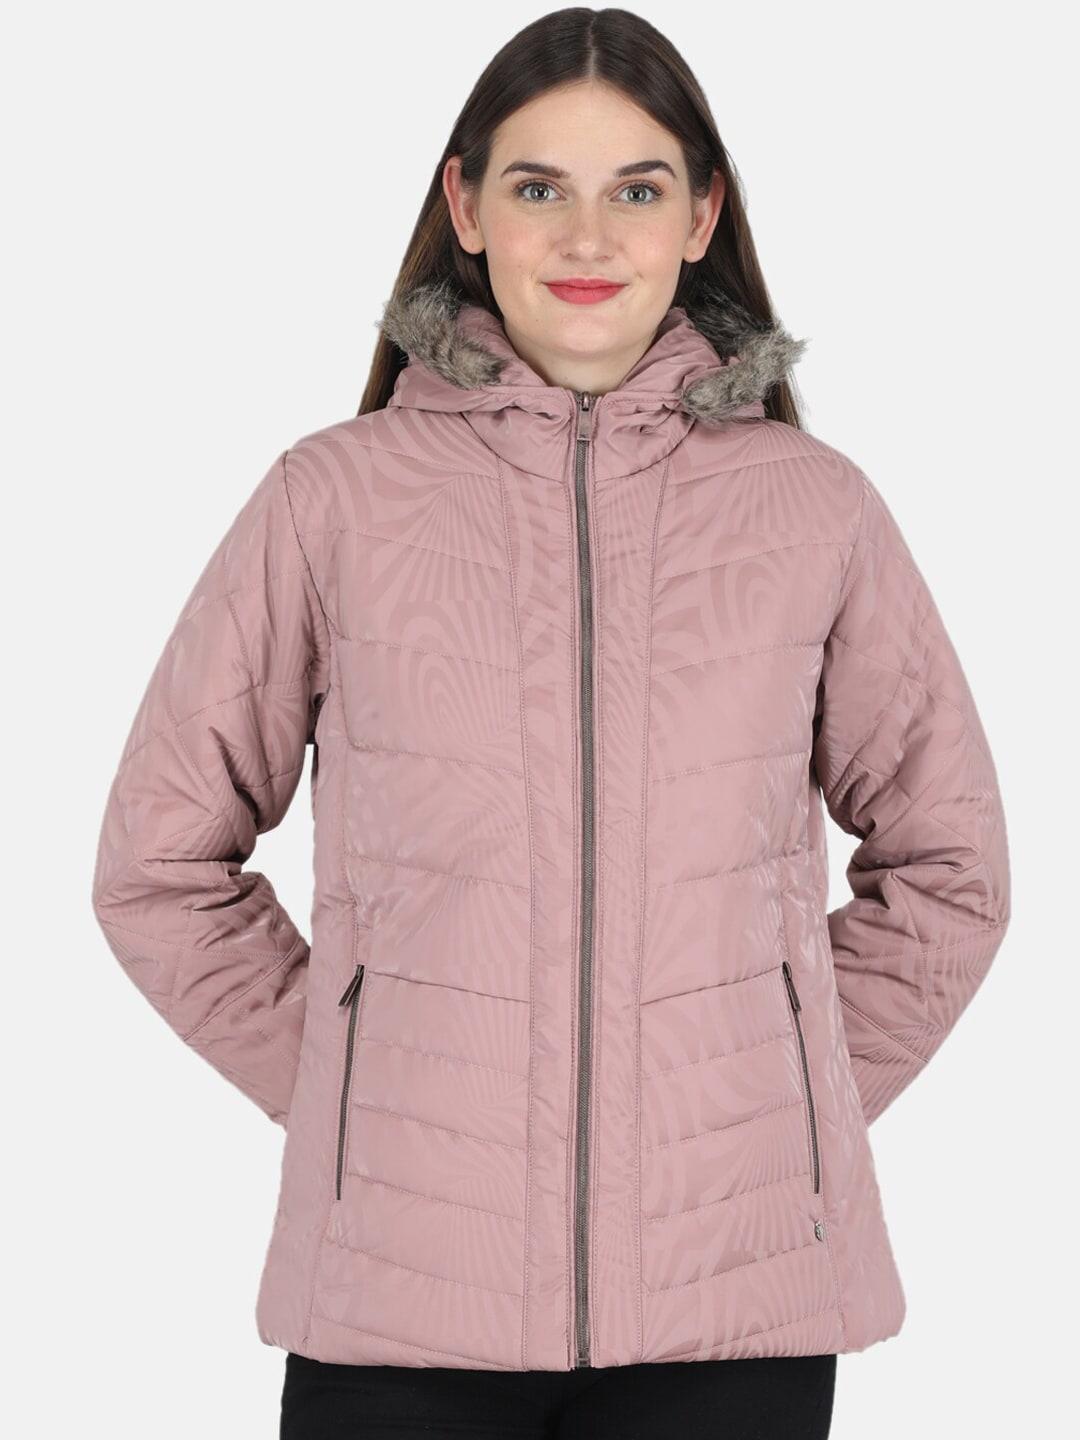 monte-carlo-women-pink-hooded-parka-jacket